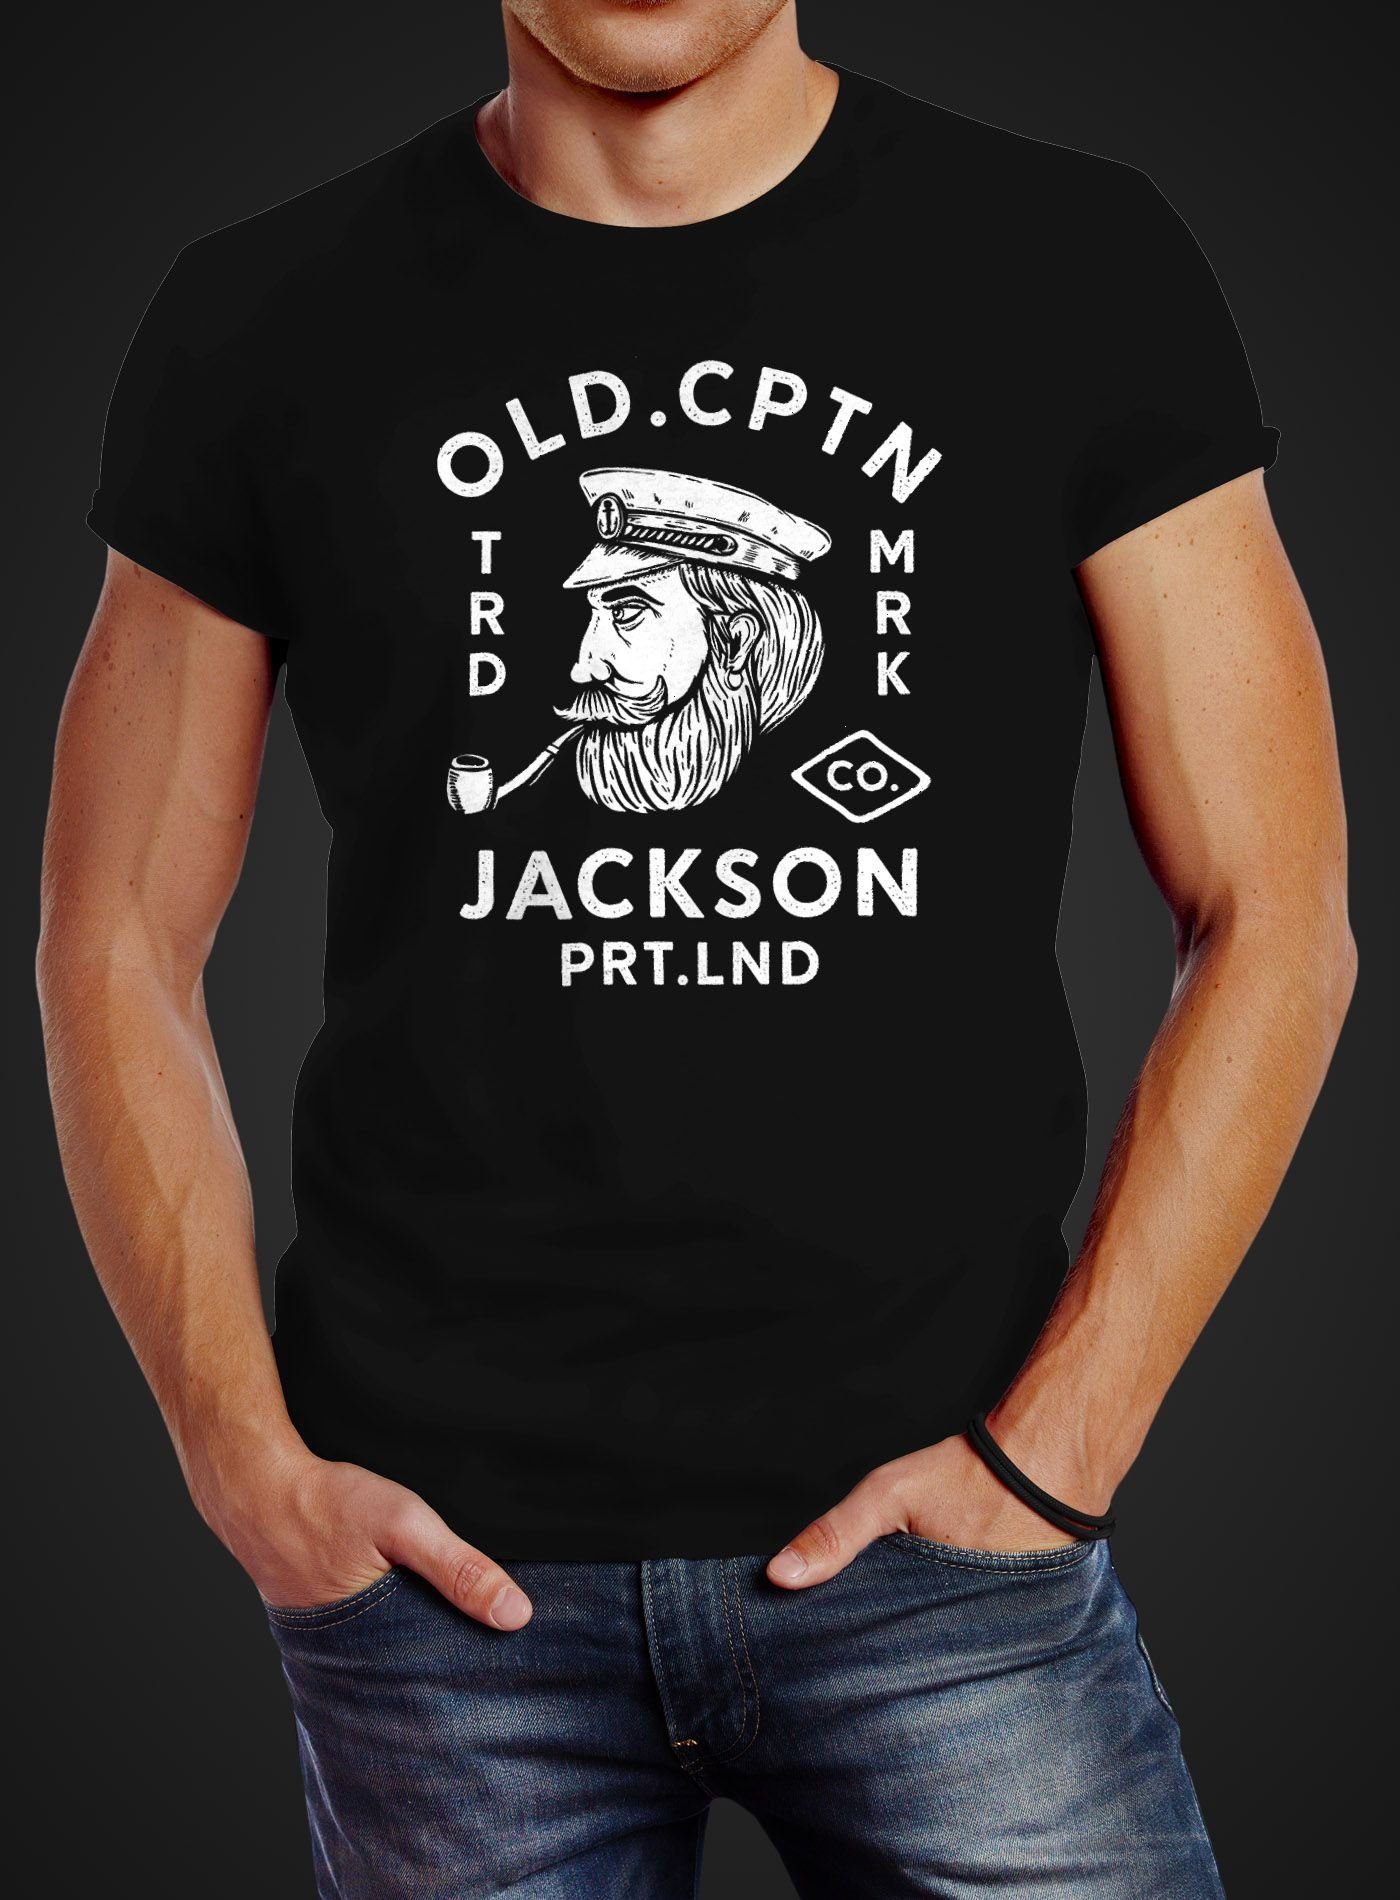 Print mit Jackson Aufdruck Motiv Neverless® Print-Shirt T-Shirt Kapitän Neverless Retro Print-Shirt Herren schwarz Old Cptn